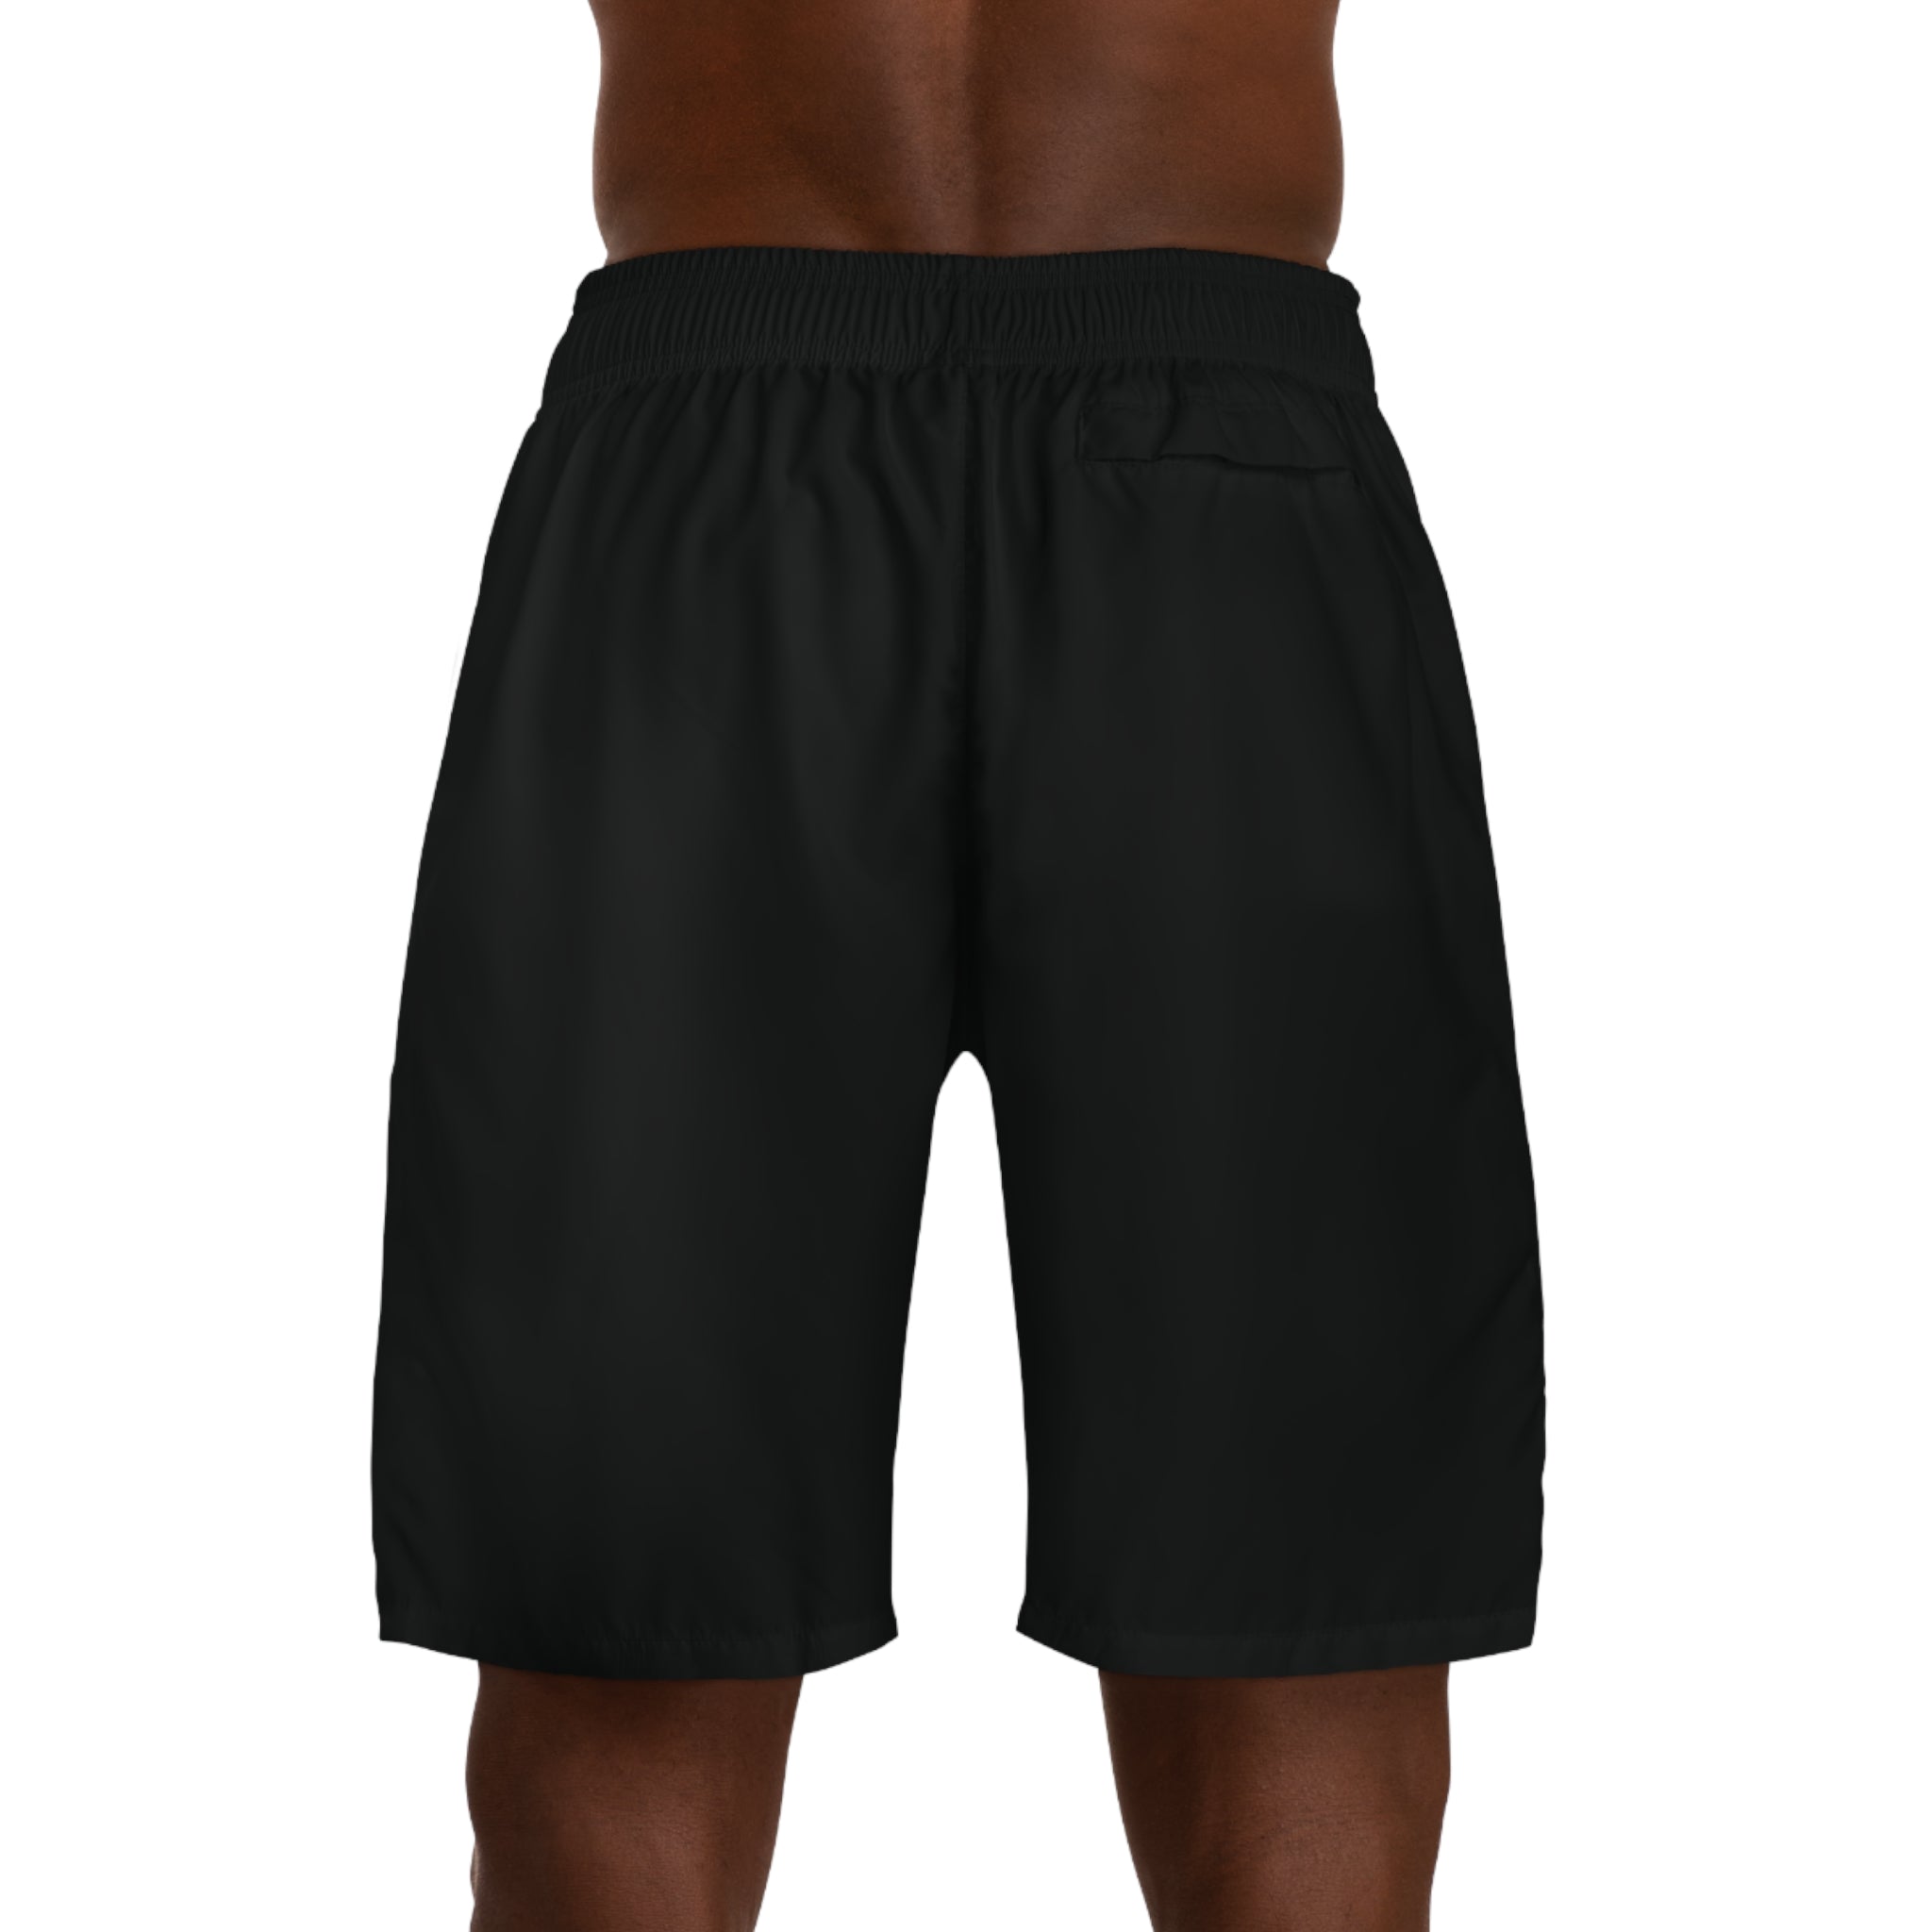 Dragon shorts (Black) - Men's Jogger Shorts